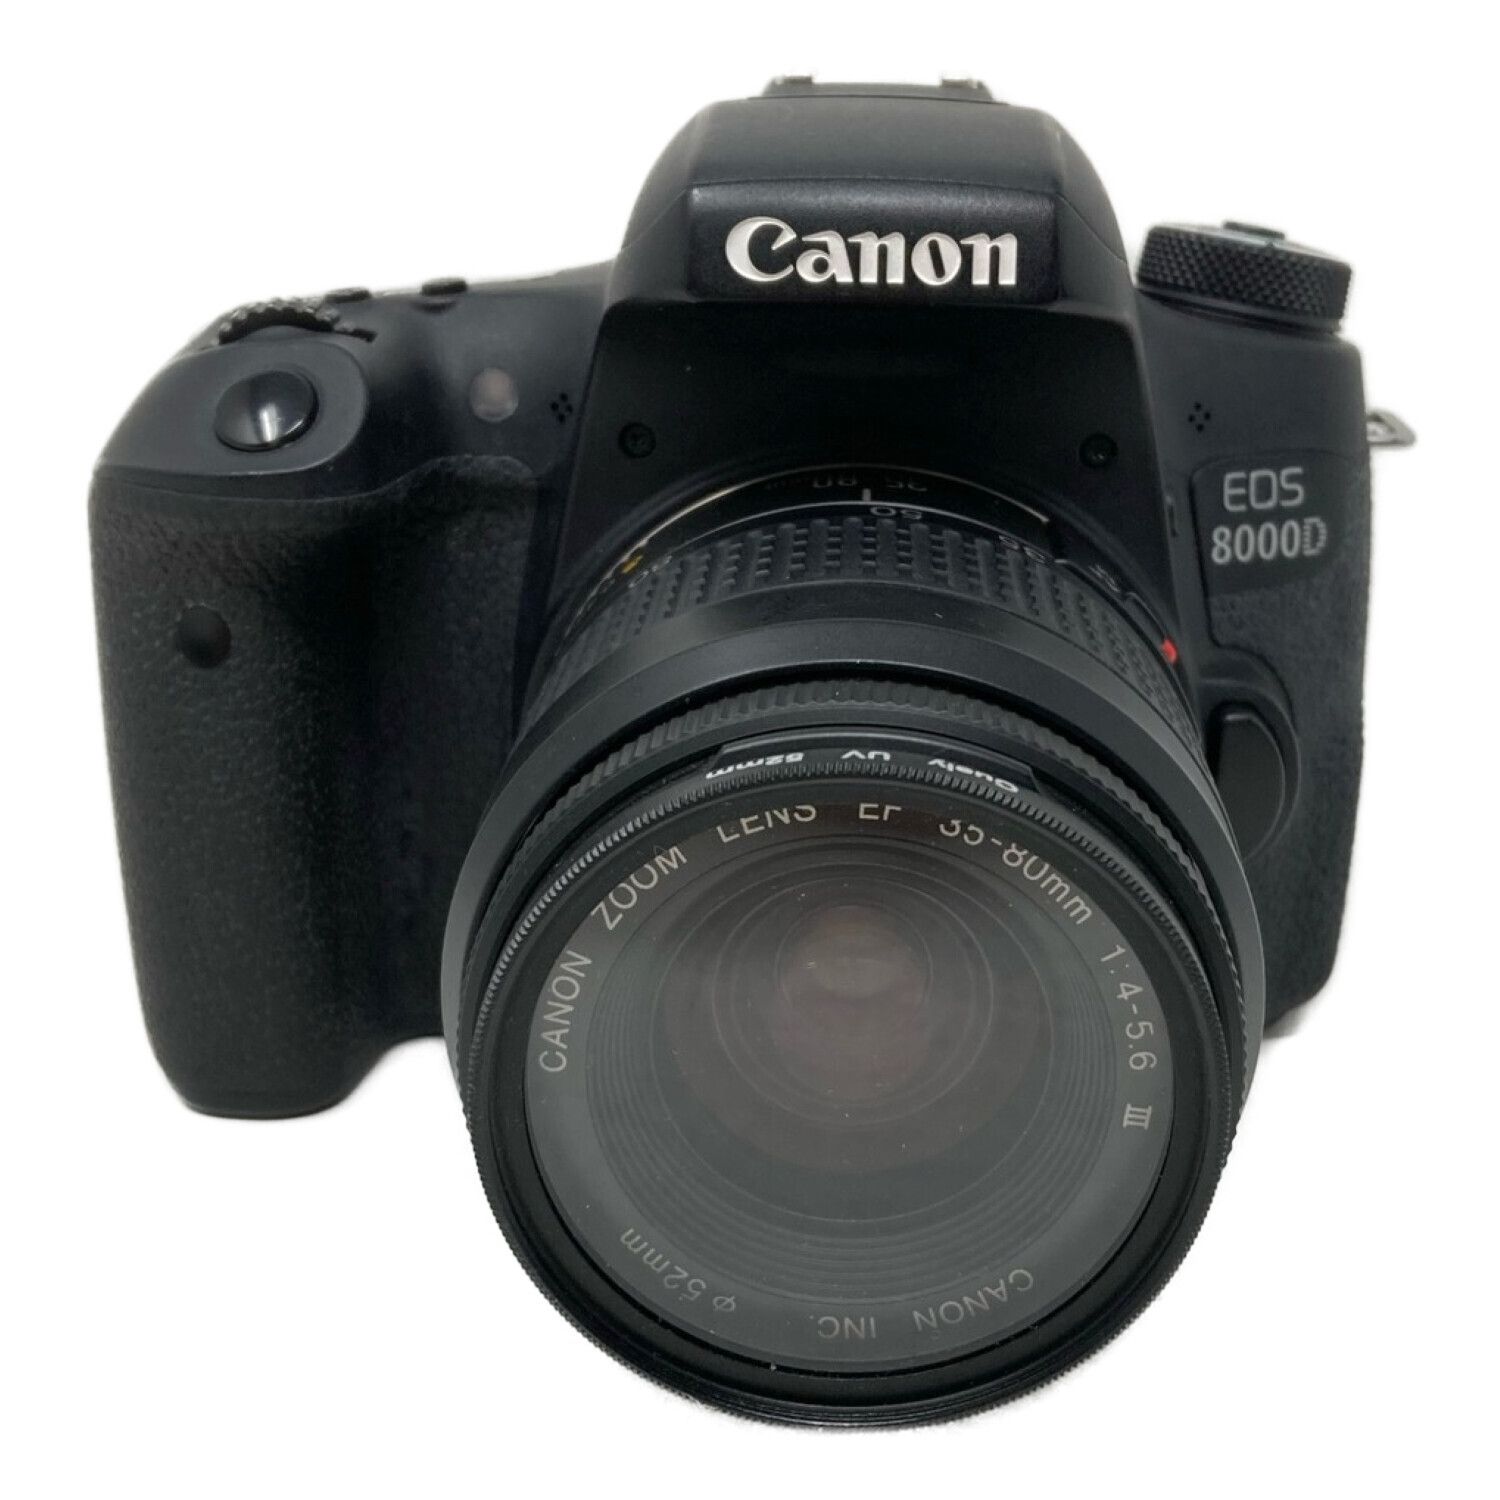 CANON (キャノン) 一眼レフカメラ EOS 8000D 2470万画素 APS-C 専用